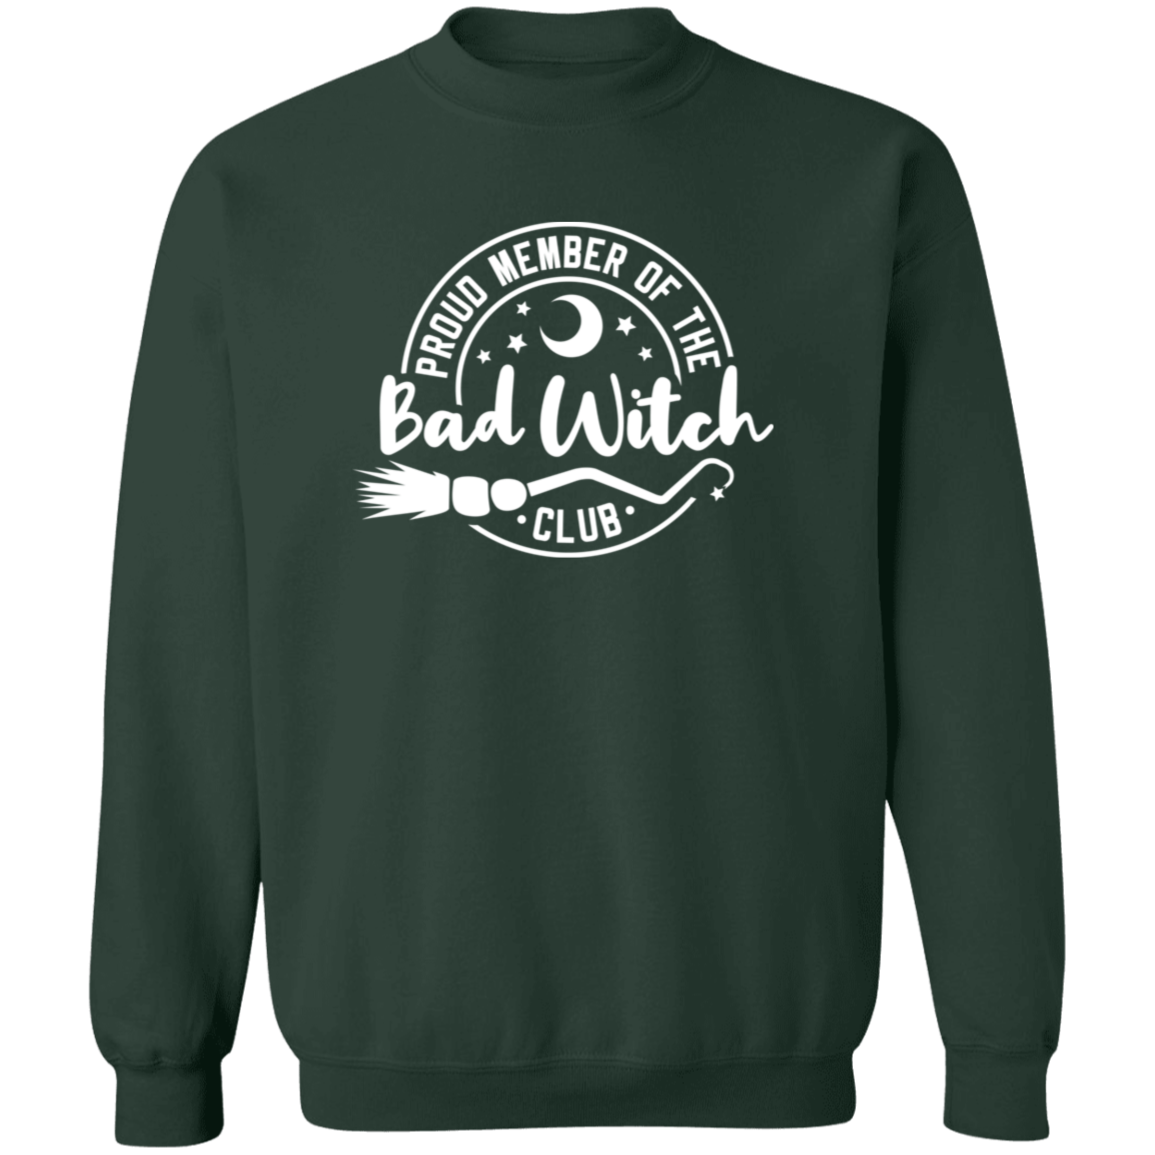 Bad Witch Club Sweatshirt